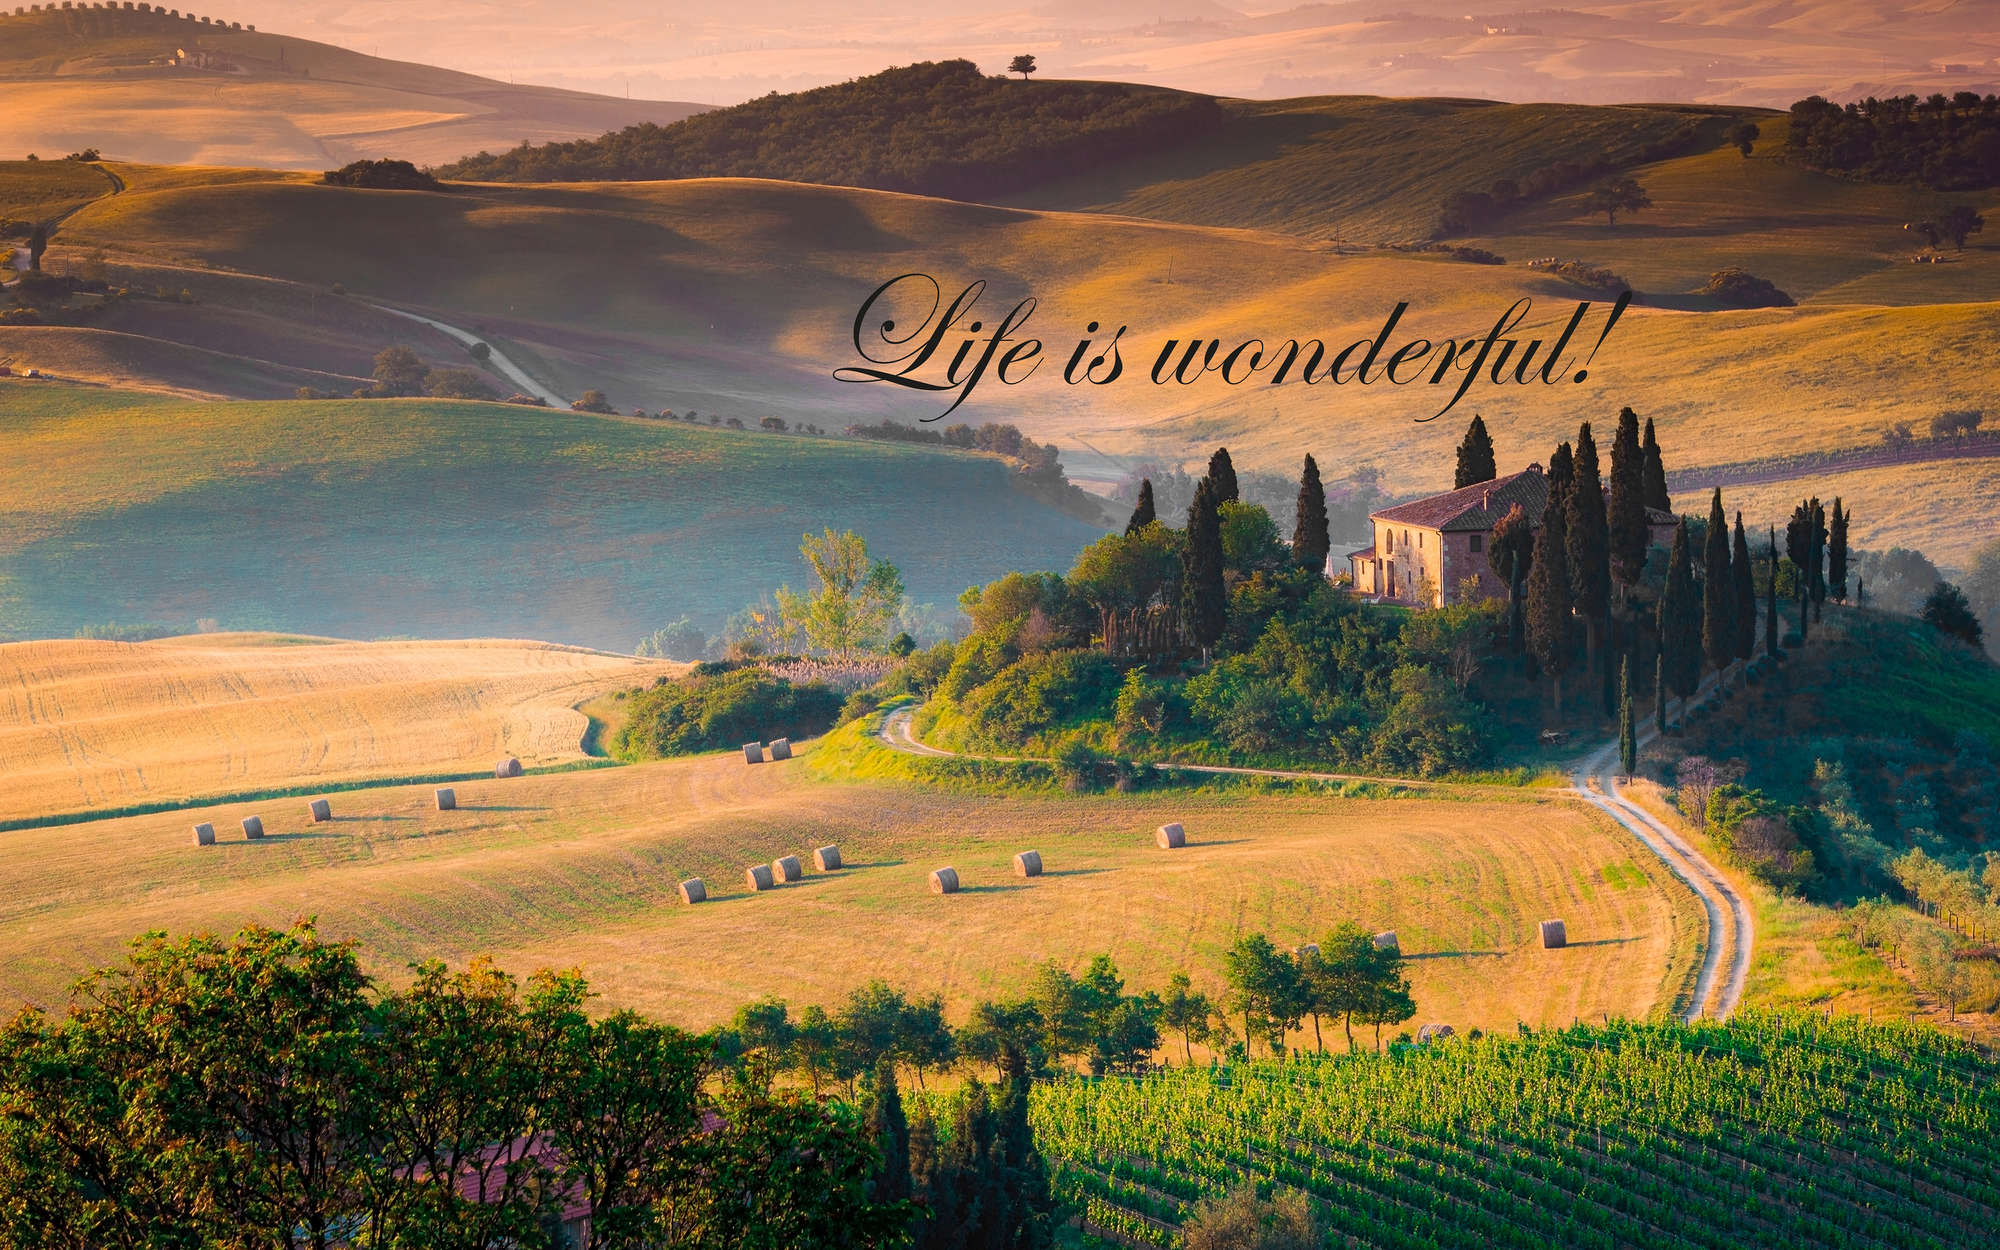             Fotomural Toscana con texto "¡La vida es maravillosa!" - tejido no tejido liso de primera calidad
        